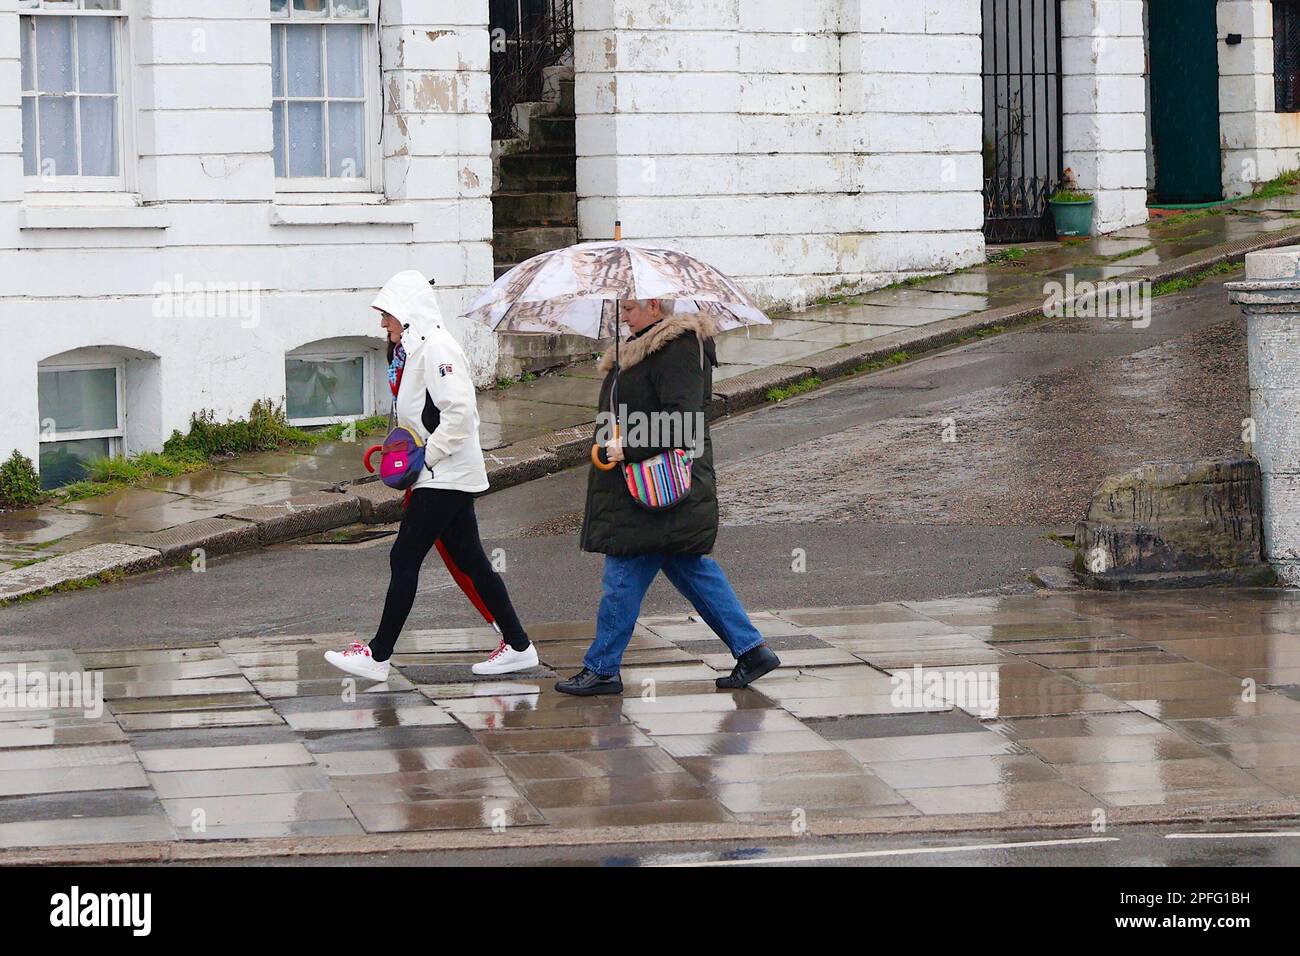 Hastings, East Sussex, Reino Unido. 17 de marzo de 2023. Clima en Reino Unido: Se esperan fuertes lluvias durante todo el día en la ciudad costera de Hastings, en East Sussex. Fotógrafo: Paul Lawrenson, Crédito de la foto: PAL News /Alamy Live News Foto de stock